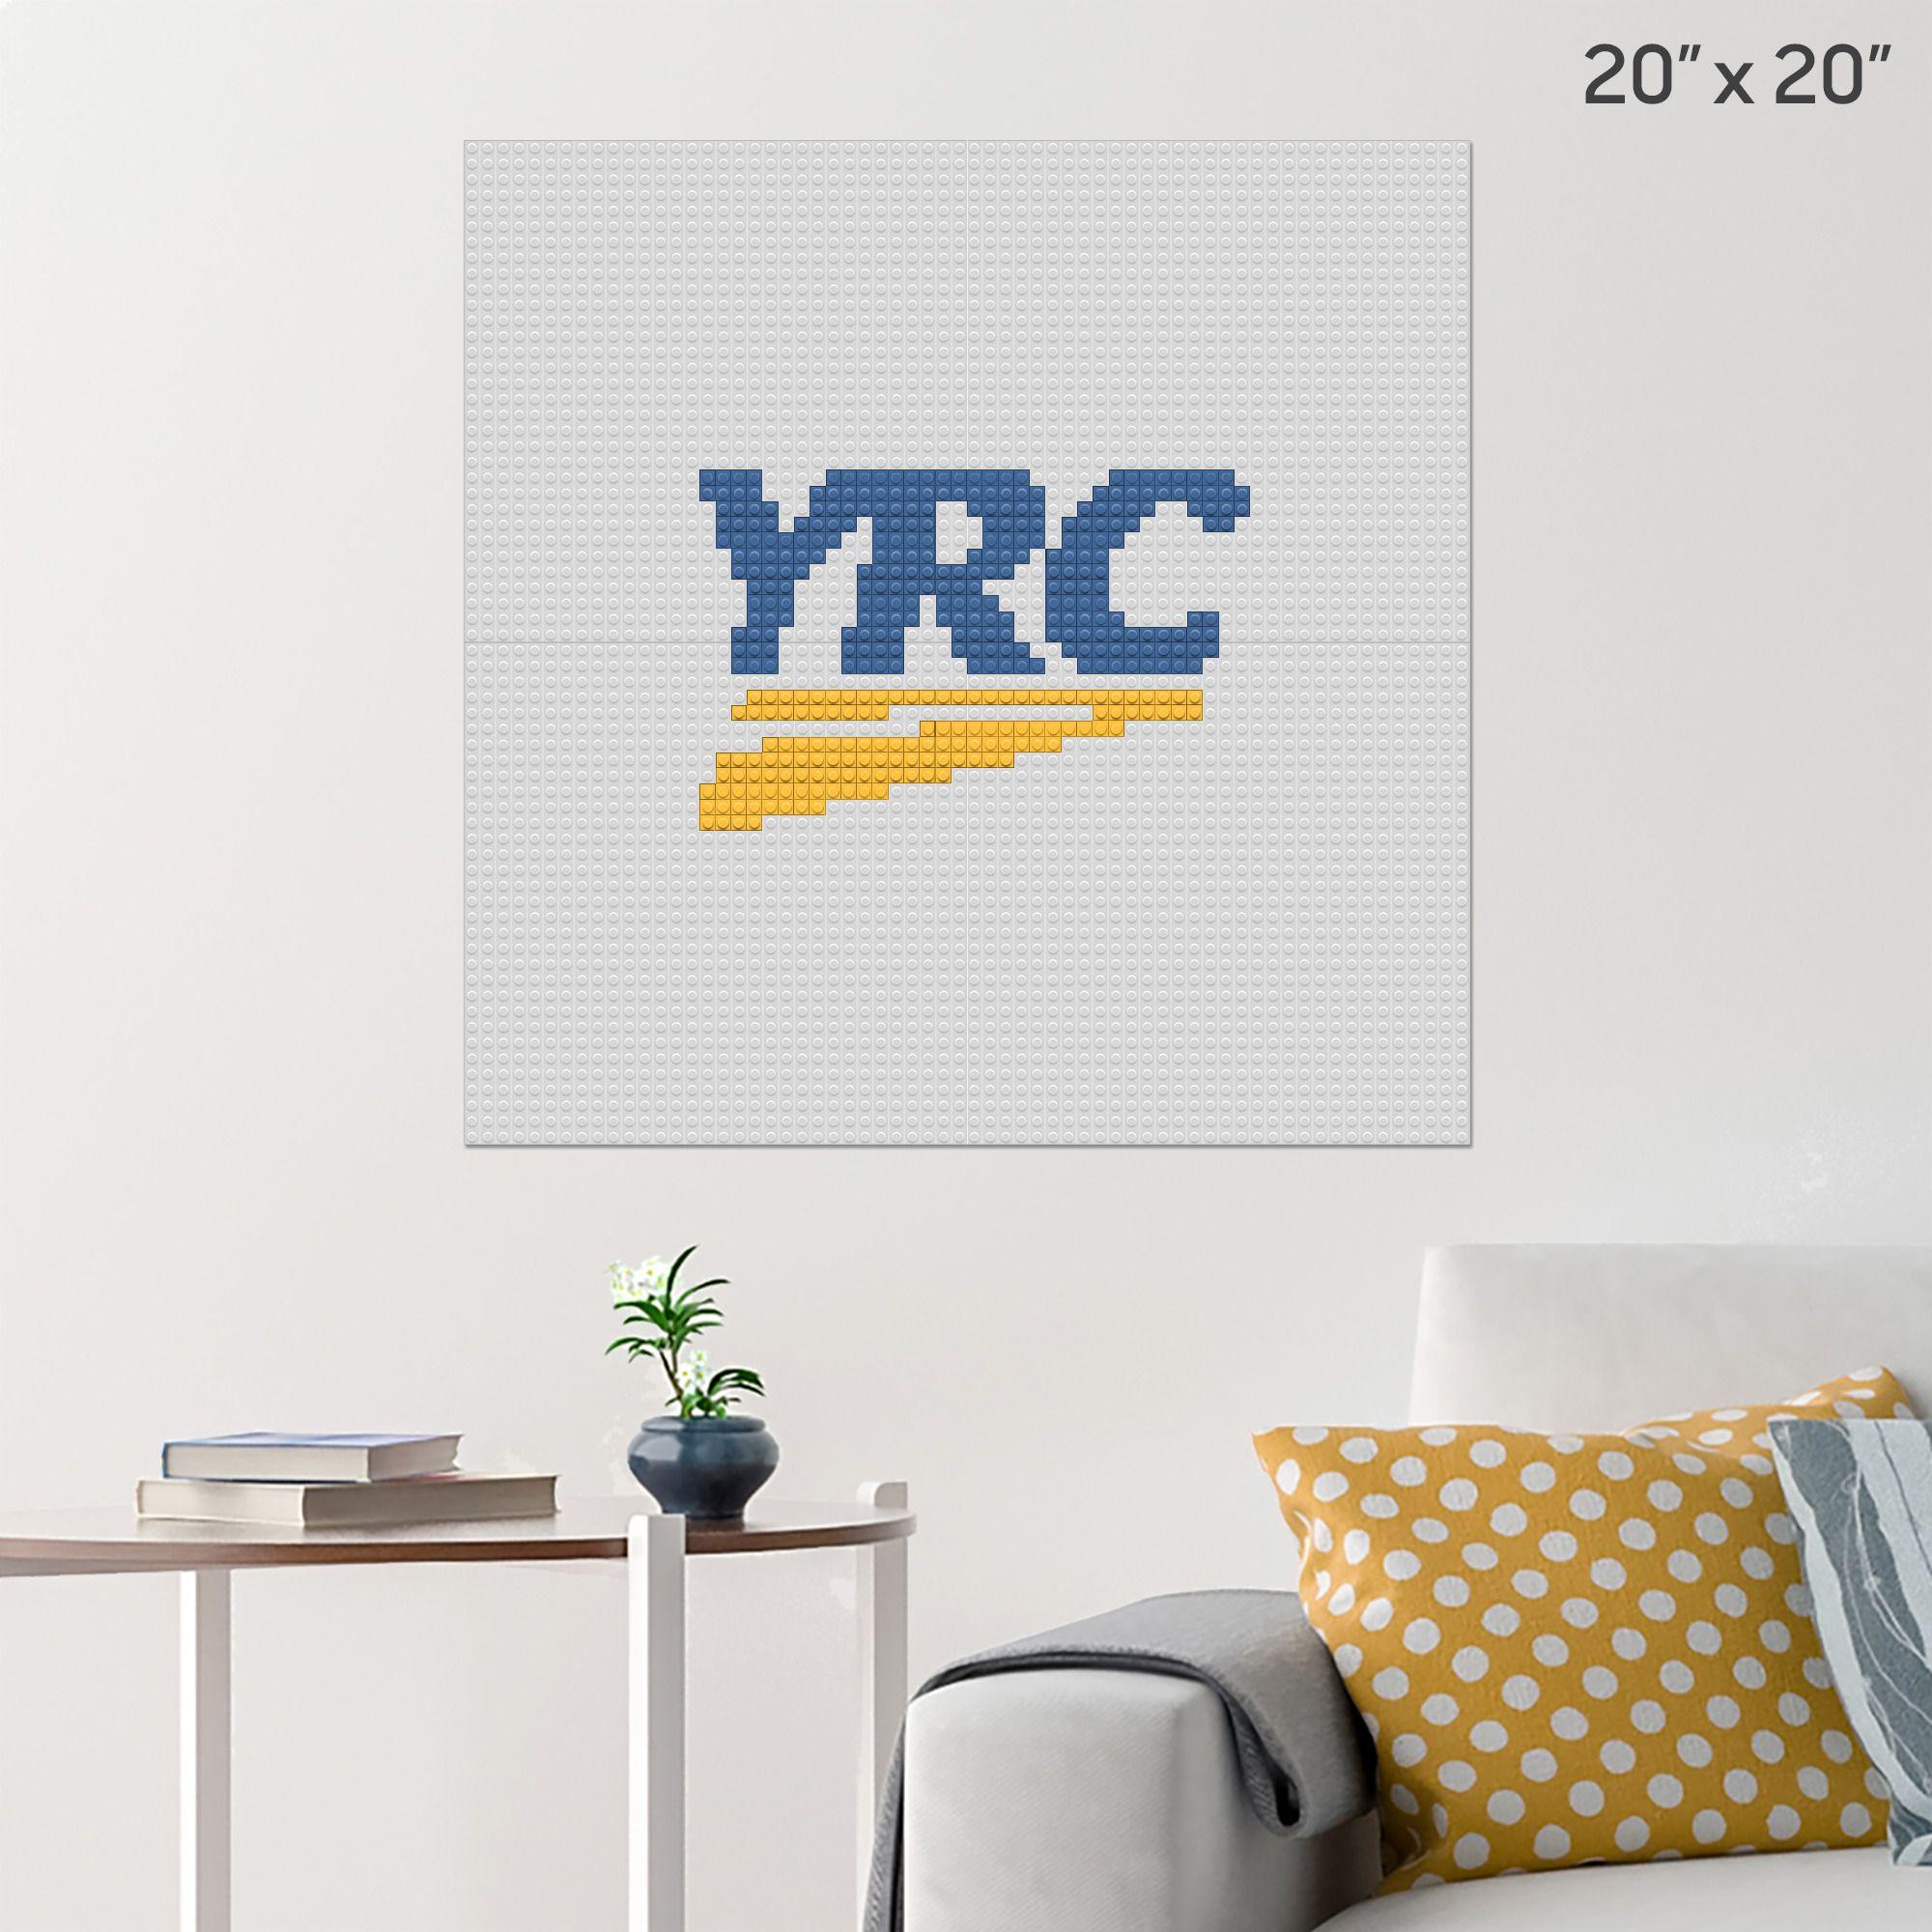 YRC Logo - YRC Worldwide Logo Wall Poster - Build Y...